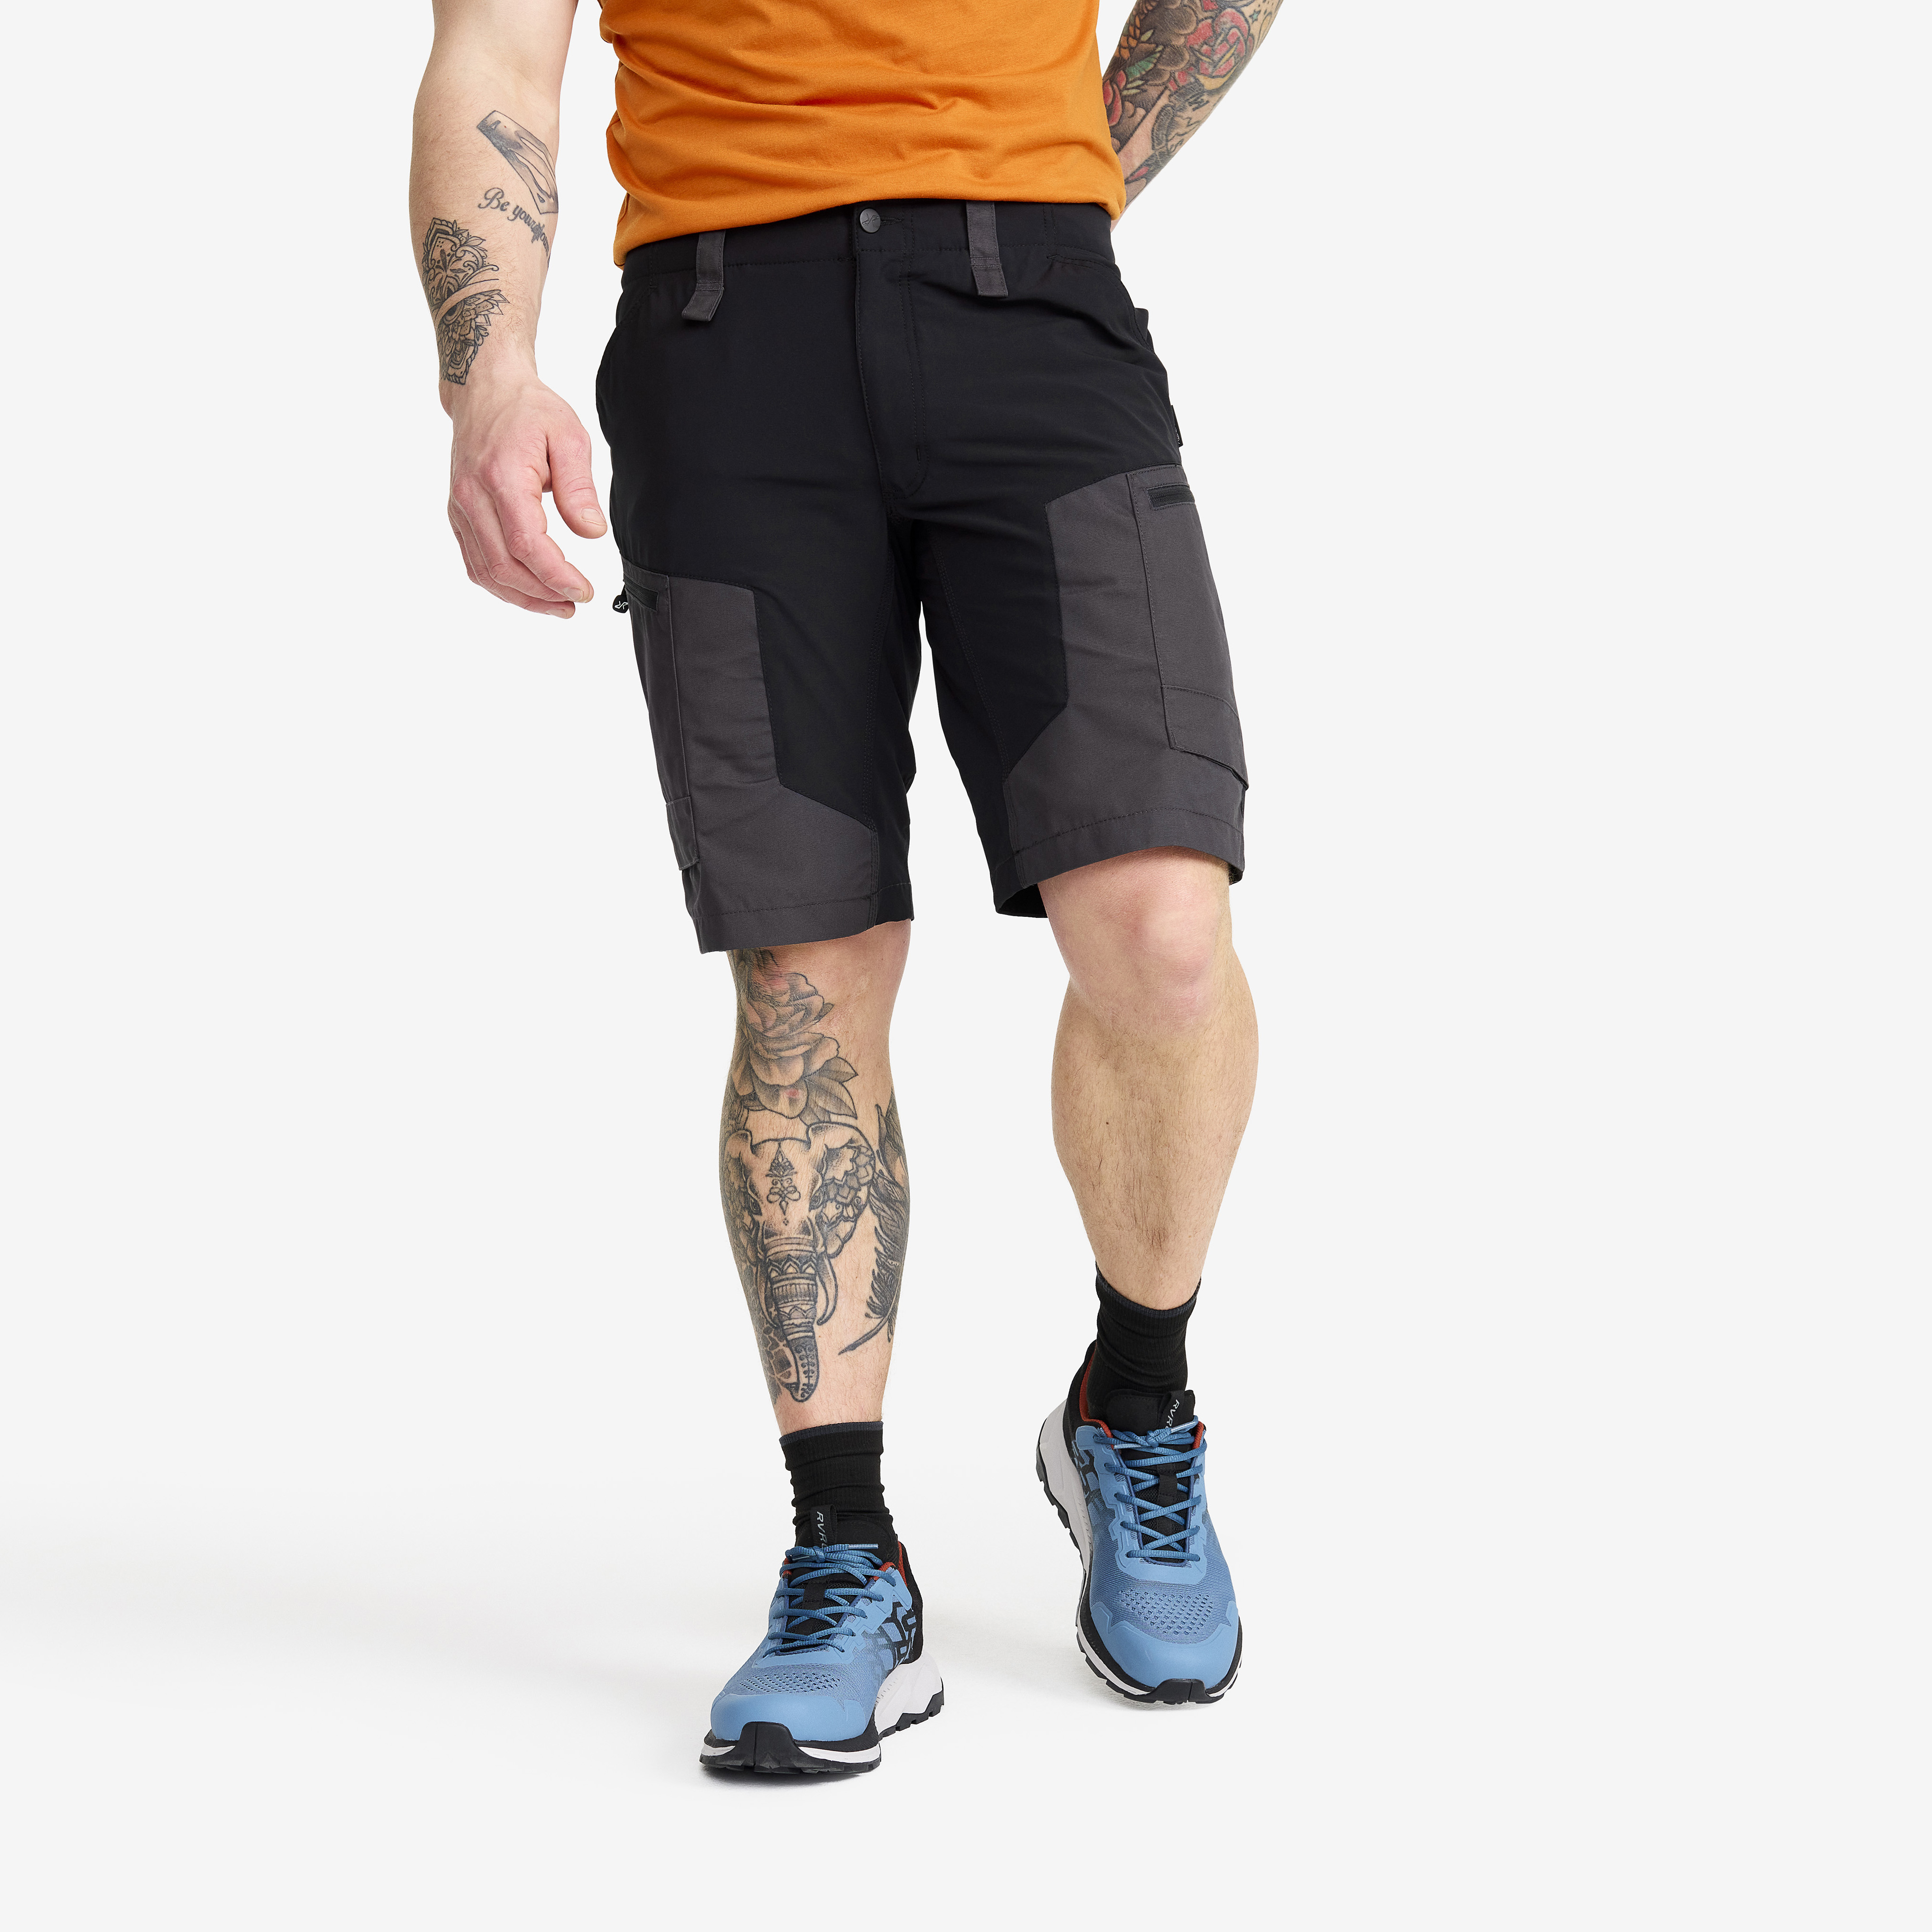 RVRC GP shorts til menn i svart